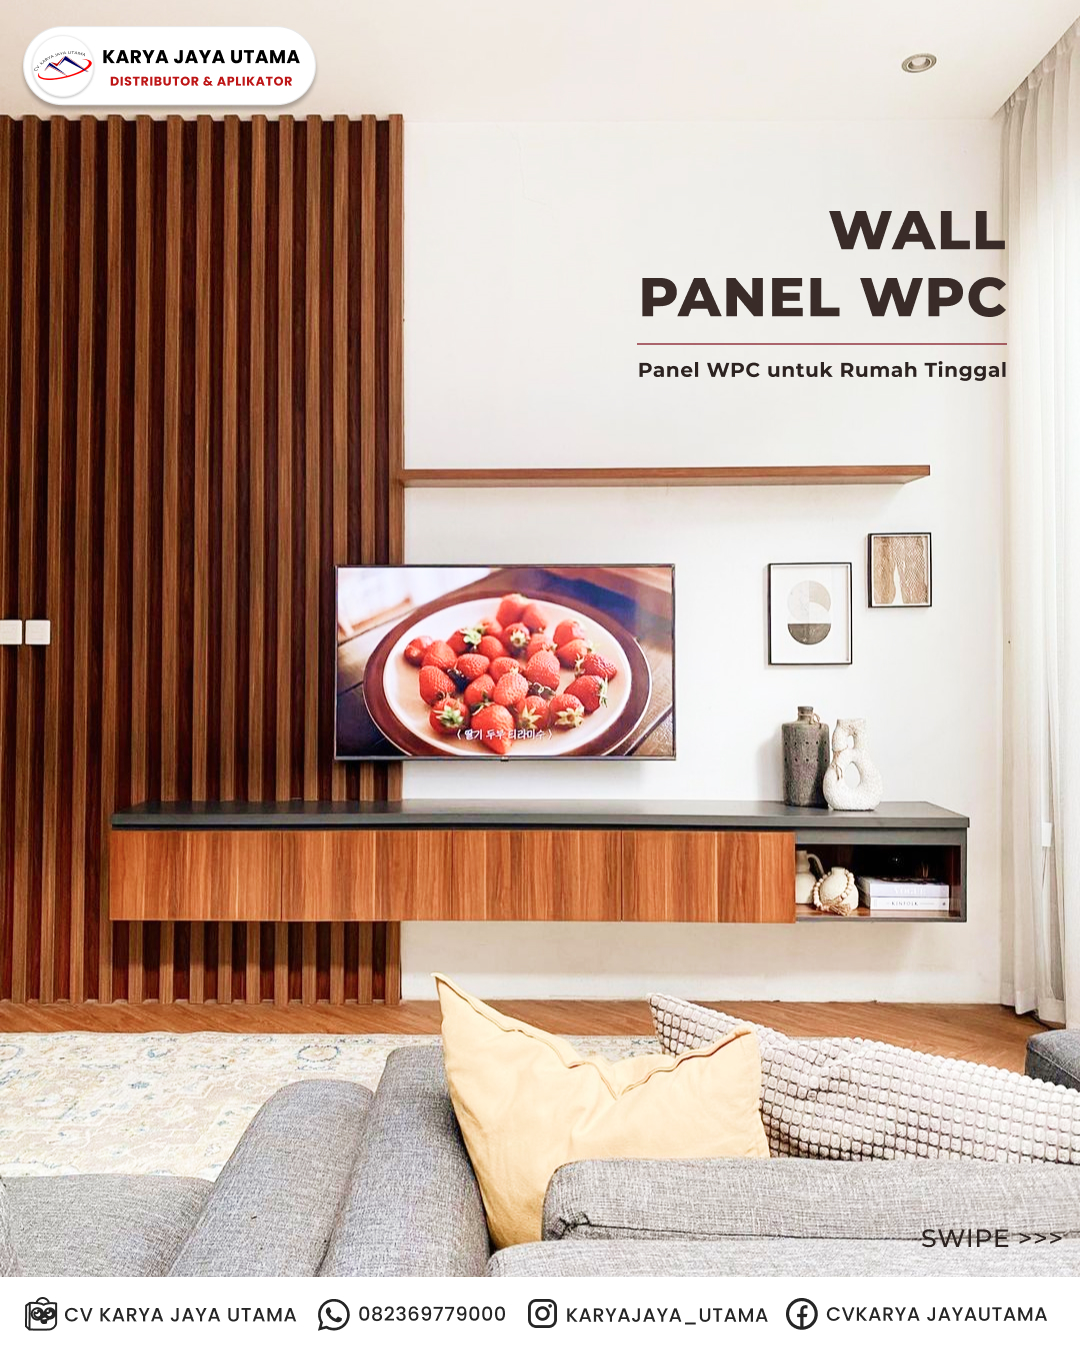 Wall Panel WPC untuk Healing Space di Rumah Tinggal